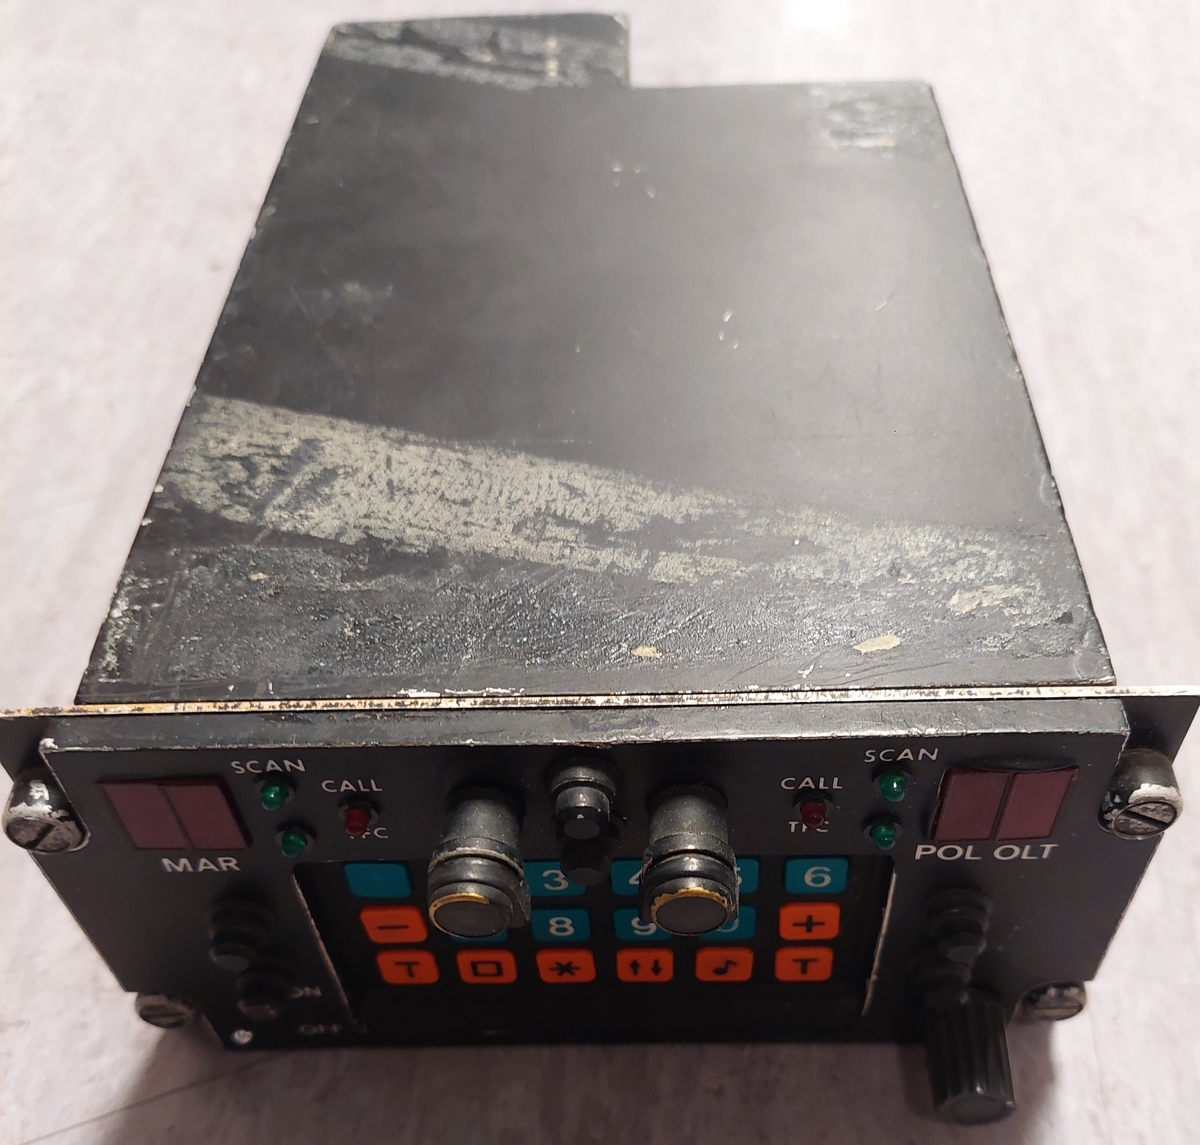 MT-110 er en modifisert Simonsen Maritim radiosett.
Ble brukt når man kommuniserte med fartøy eller kystradio.
Kontrollboksen er modifisert slik at man kan lytte på Maritim  VHF samt OLT samtidig hvist OLT radiodelen er innstallert i den ledige sloten på mountingen.
Radioen ble brukt i P-3B og i P-3N ORION. Radioen ble installert i Orion på begynnelsen av 80 tallet på radiooperatør stasjonen, og flyttet til Navigatør posisjonen da P-3B konverterte til P-3N på begynnelsen av 90 tallet.

